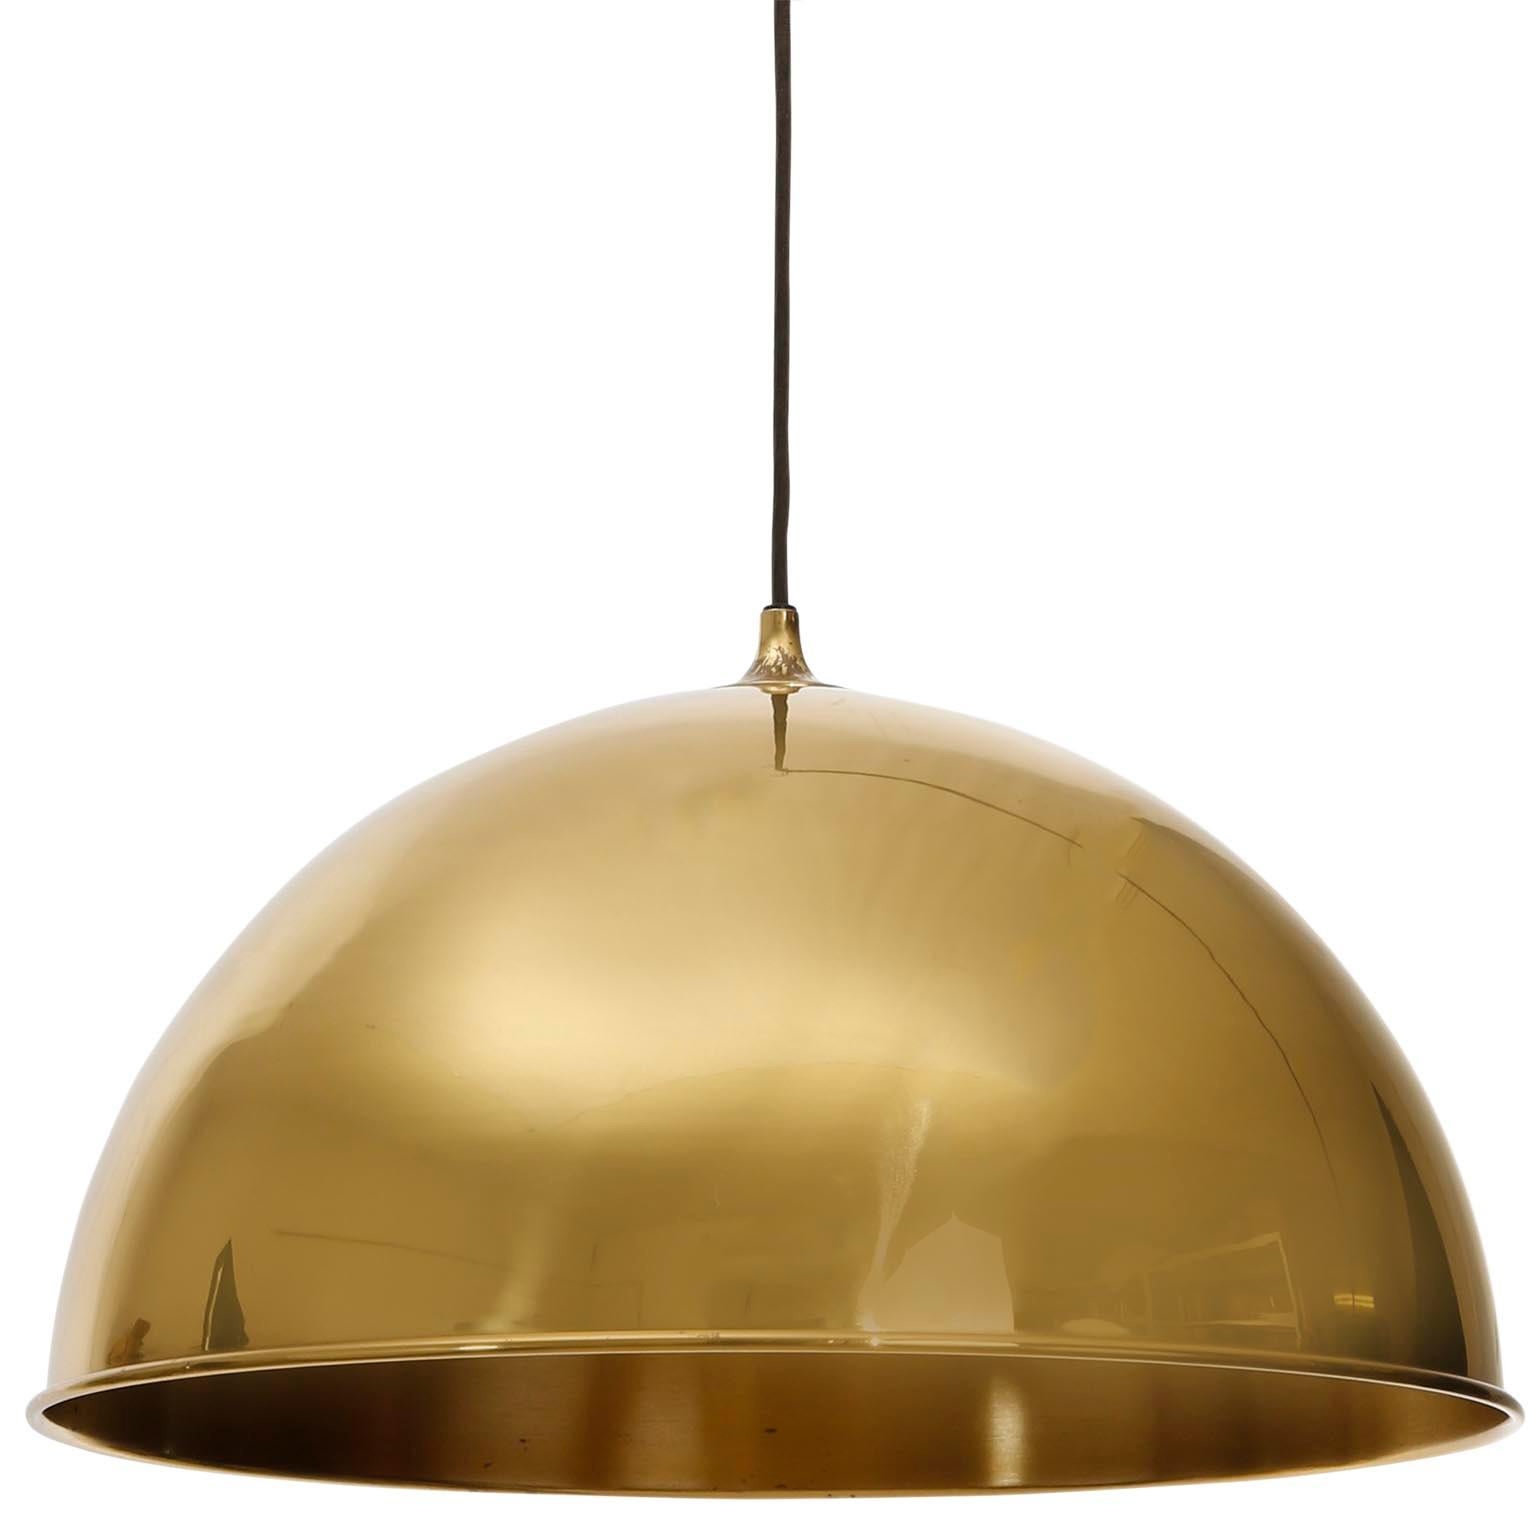 Florian Schulz Dome Pendant Light, Brass Counterweight Counter Balance, 1970 (Deutsch)